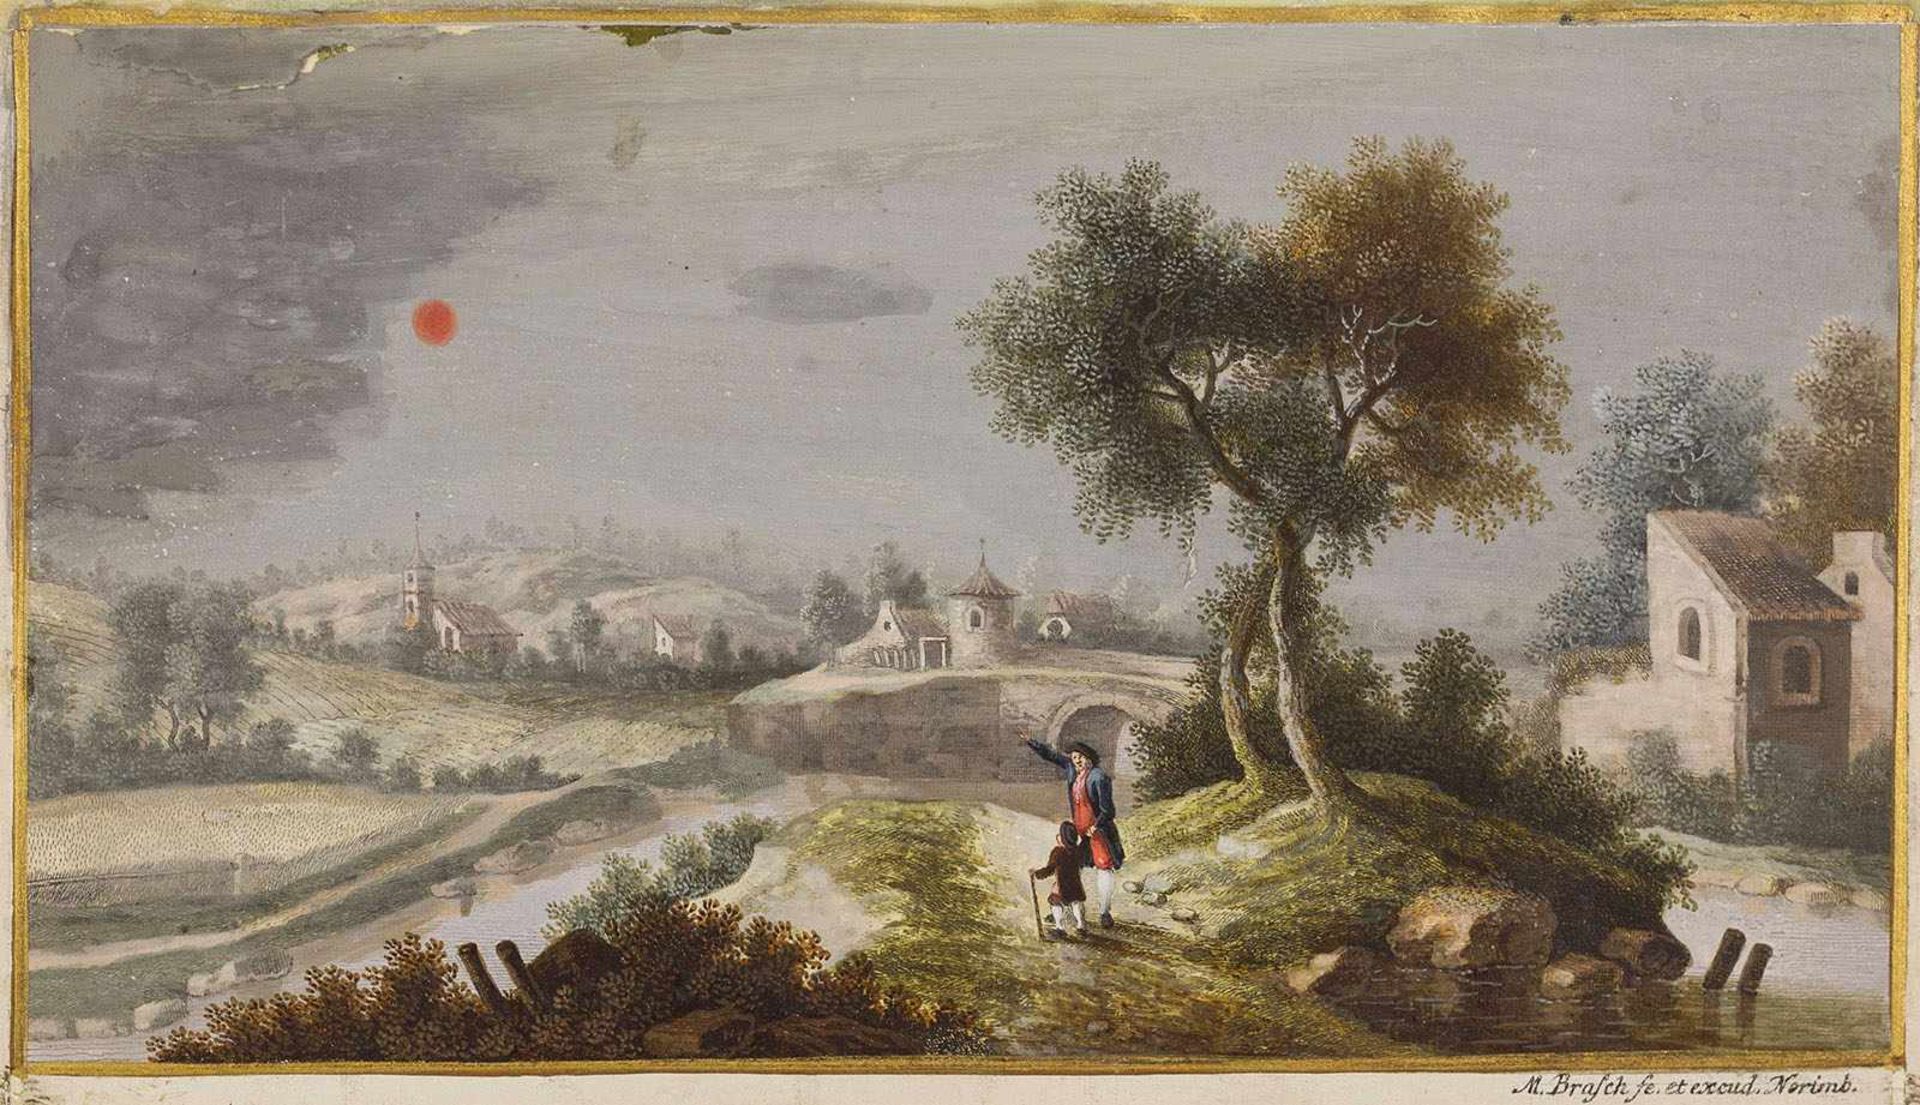 Brasch, Magnus "(1731-1787). Blutrot am Firmament. Zeichnung. Deckfarben auf Pergament, sign. M.